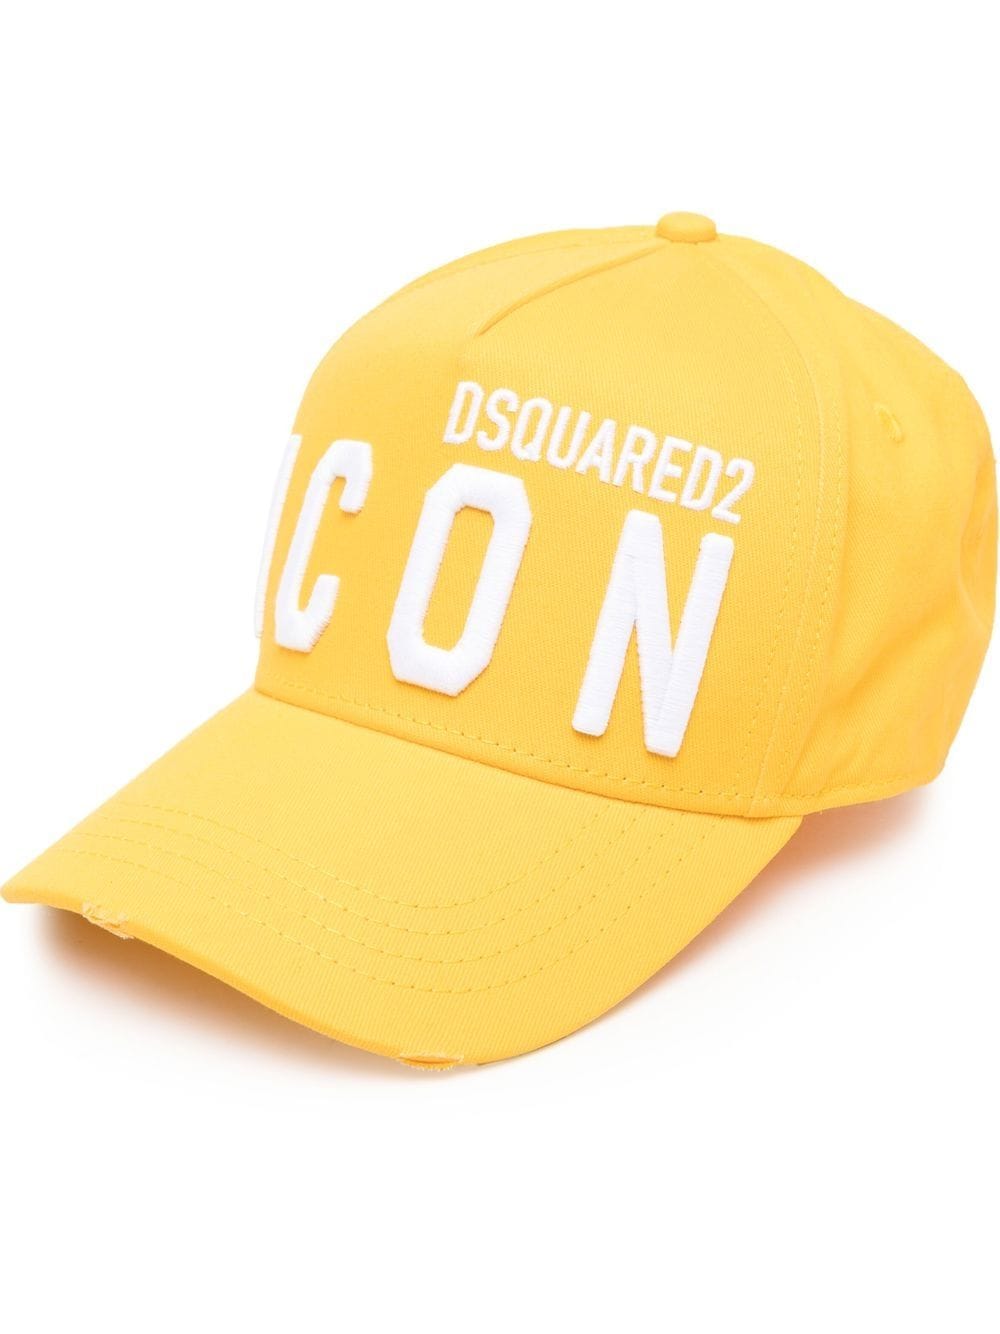 Dsquared2 BCM0412 ICON Baseball Cap - M2643 Yellow/White - Escape Menswear